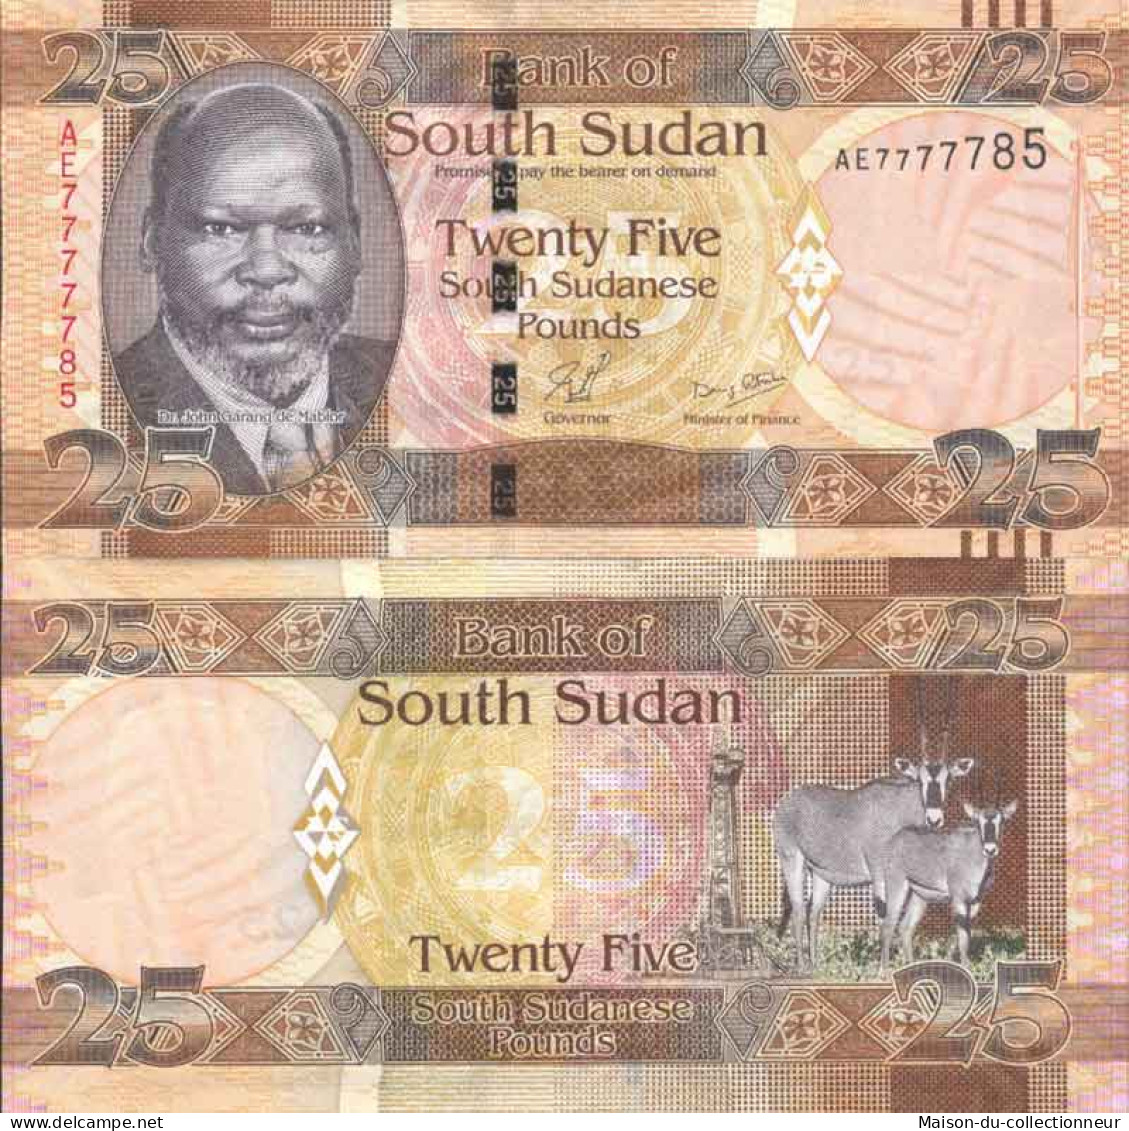 Billet De Banque Collection Soudan Du Sud - PK N° 8 - 25 Pounds - Sudán Del Sur